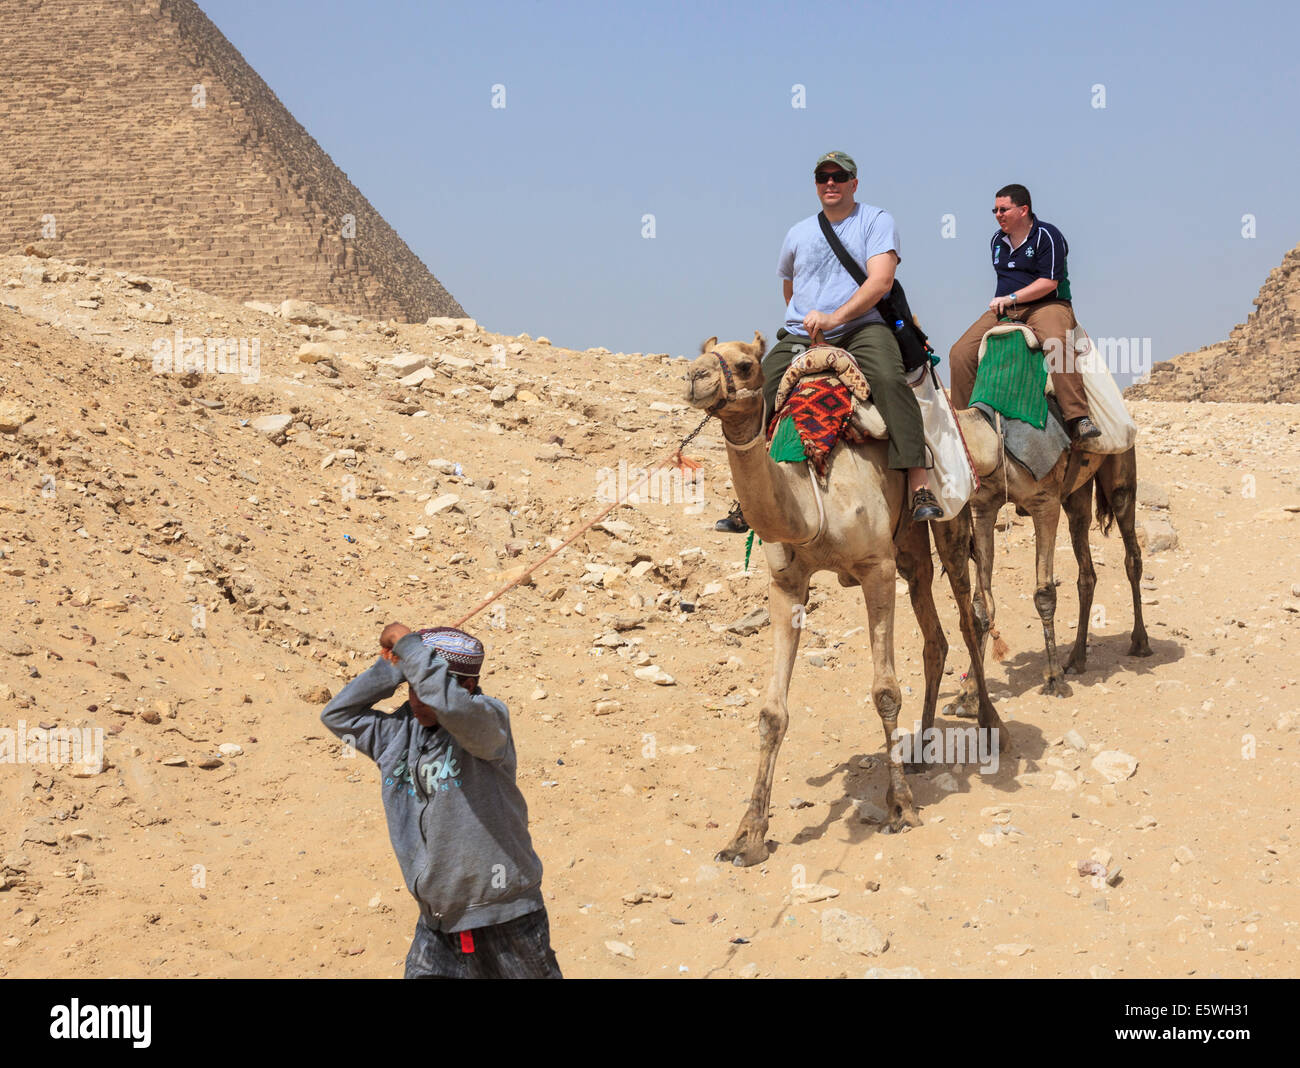 Les touristes chameaux par la grande pyramide de Gizeh au Caire, Egypte Banque D'Images